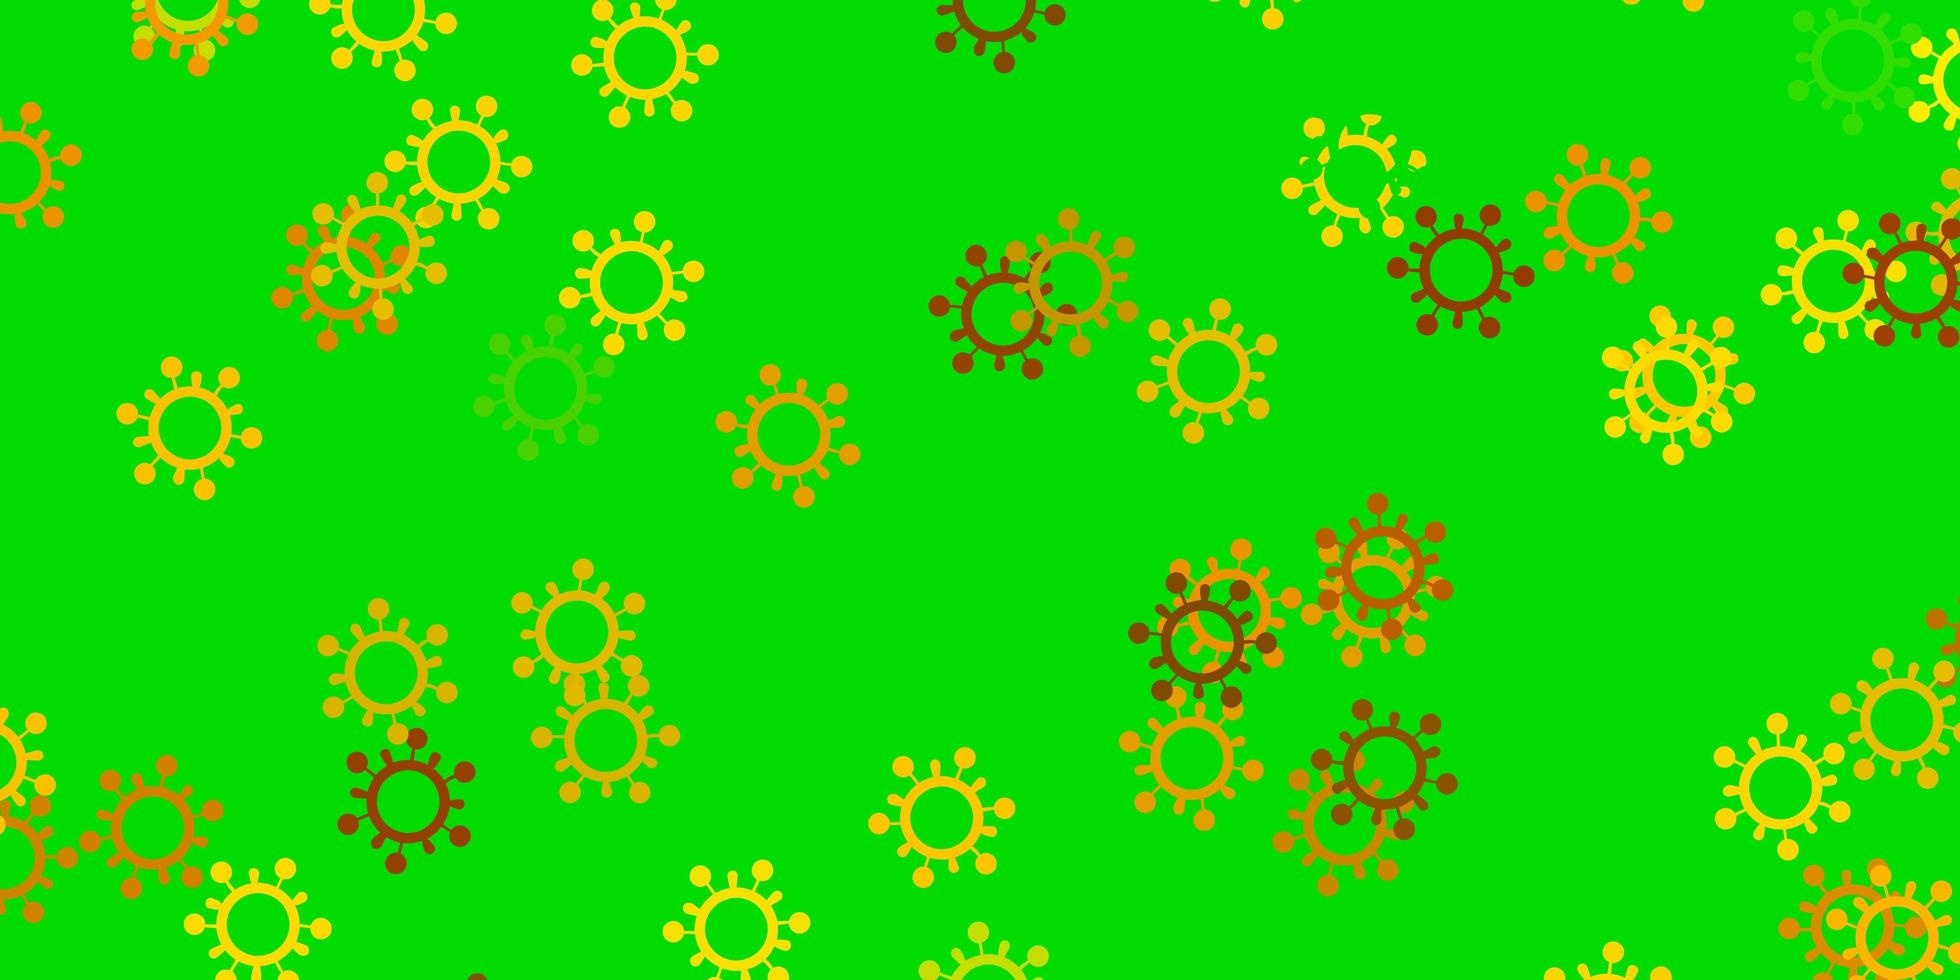 ljusgrön, gul vektorstruktur med sjukdomssymboler. vektor